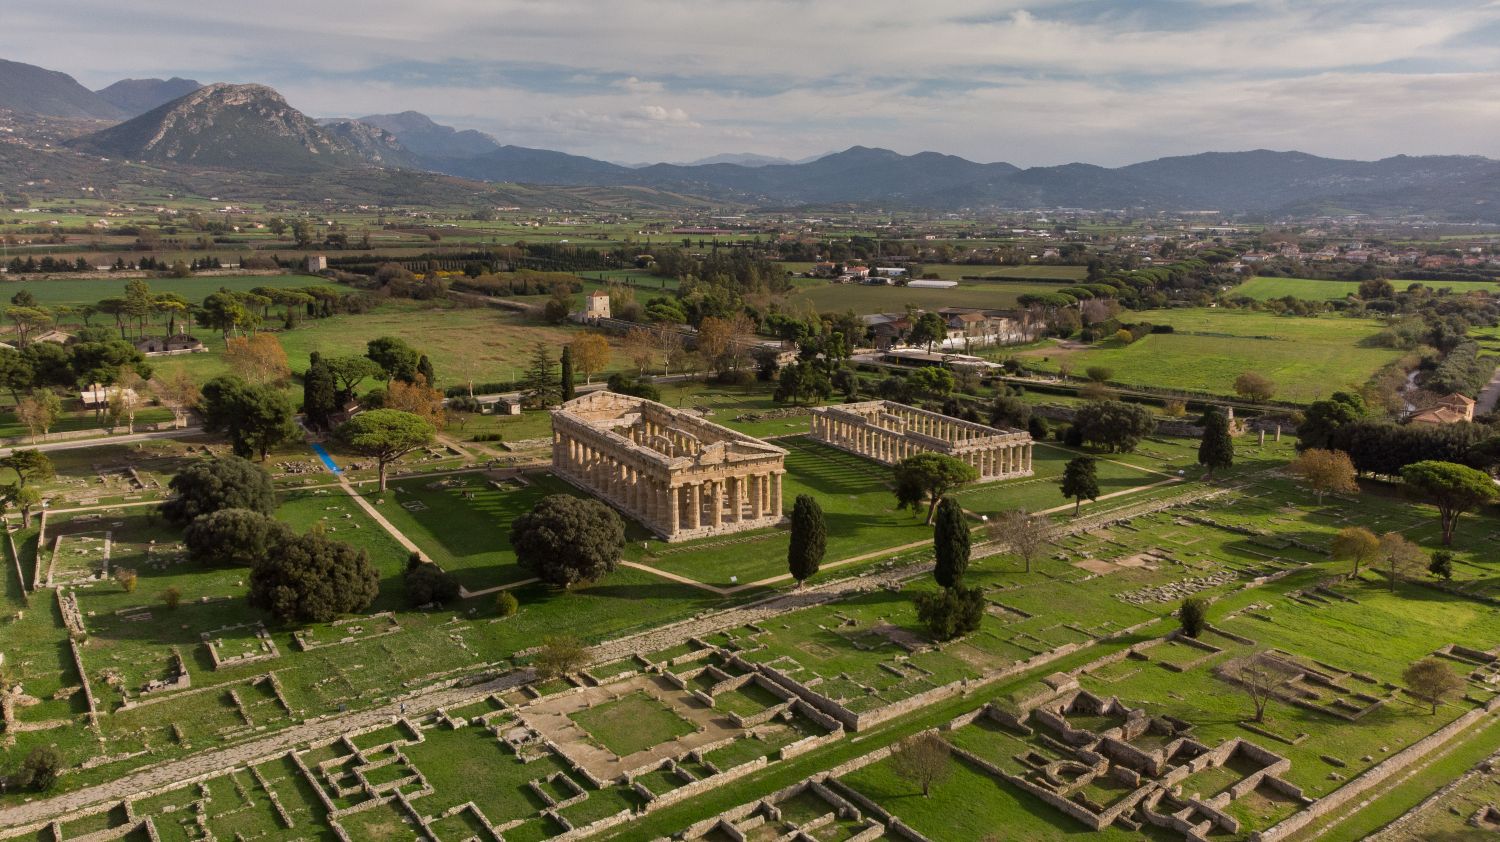 Poseidonia/Paestum, zicht op de tempels vanuit de lucht